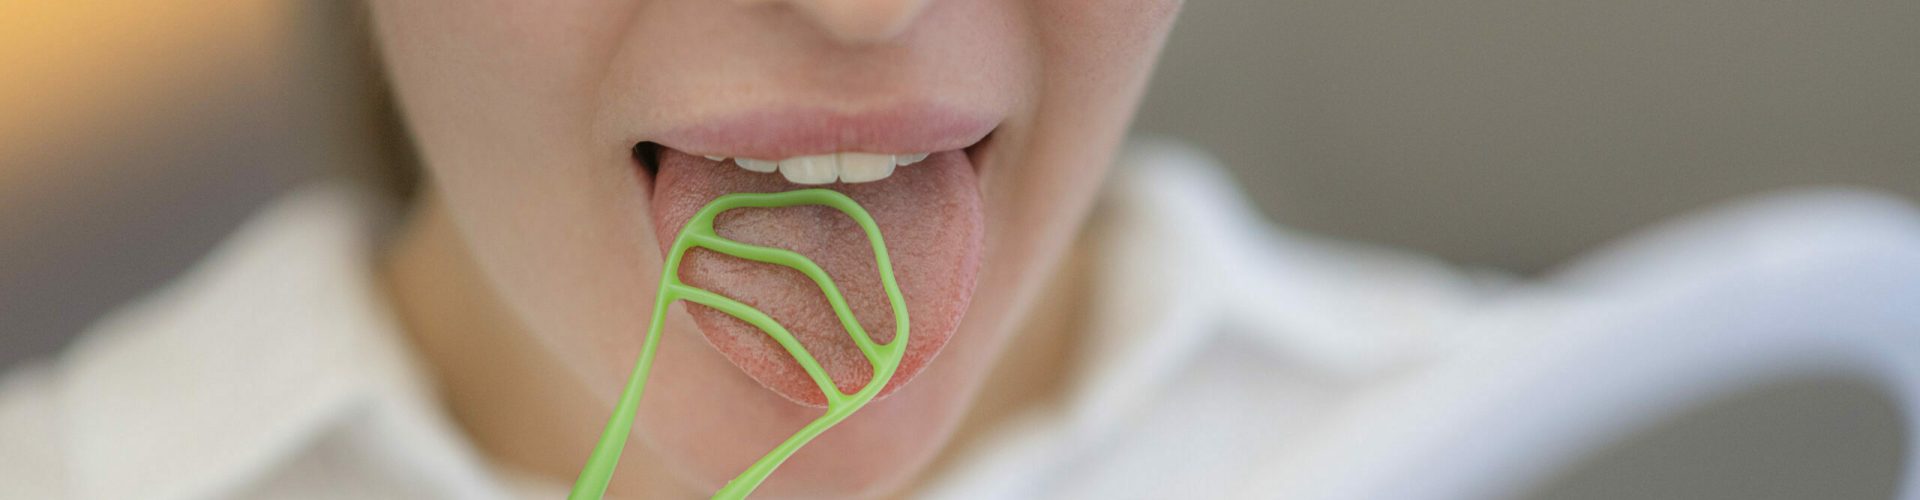 Langanhaltender Mundgeruch, der trotz Zähneputzens besteht, sollten Sie beim Zahnarzt abklären